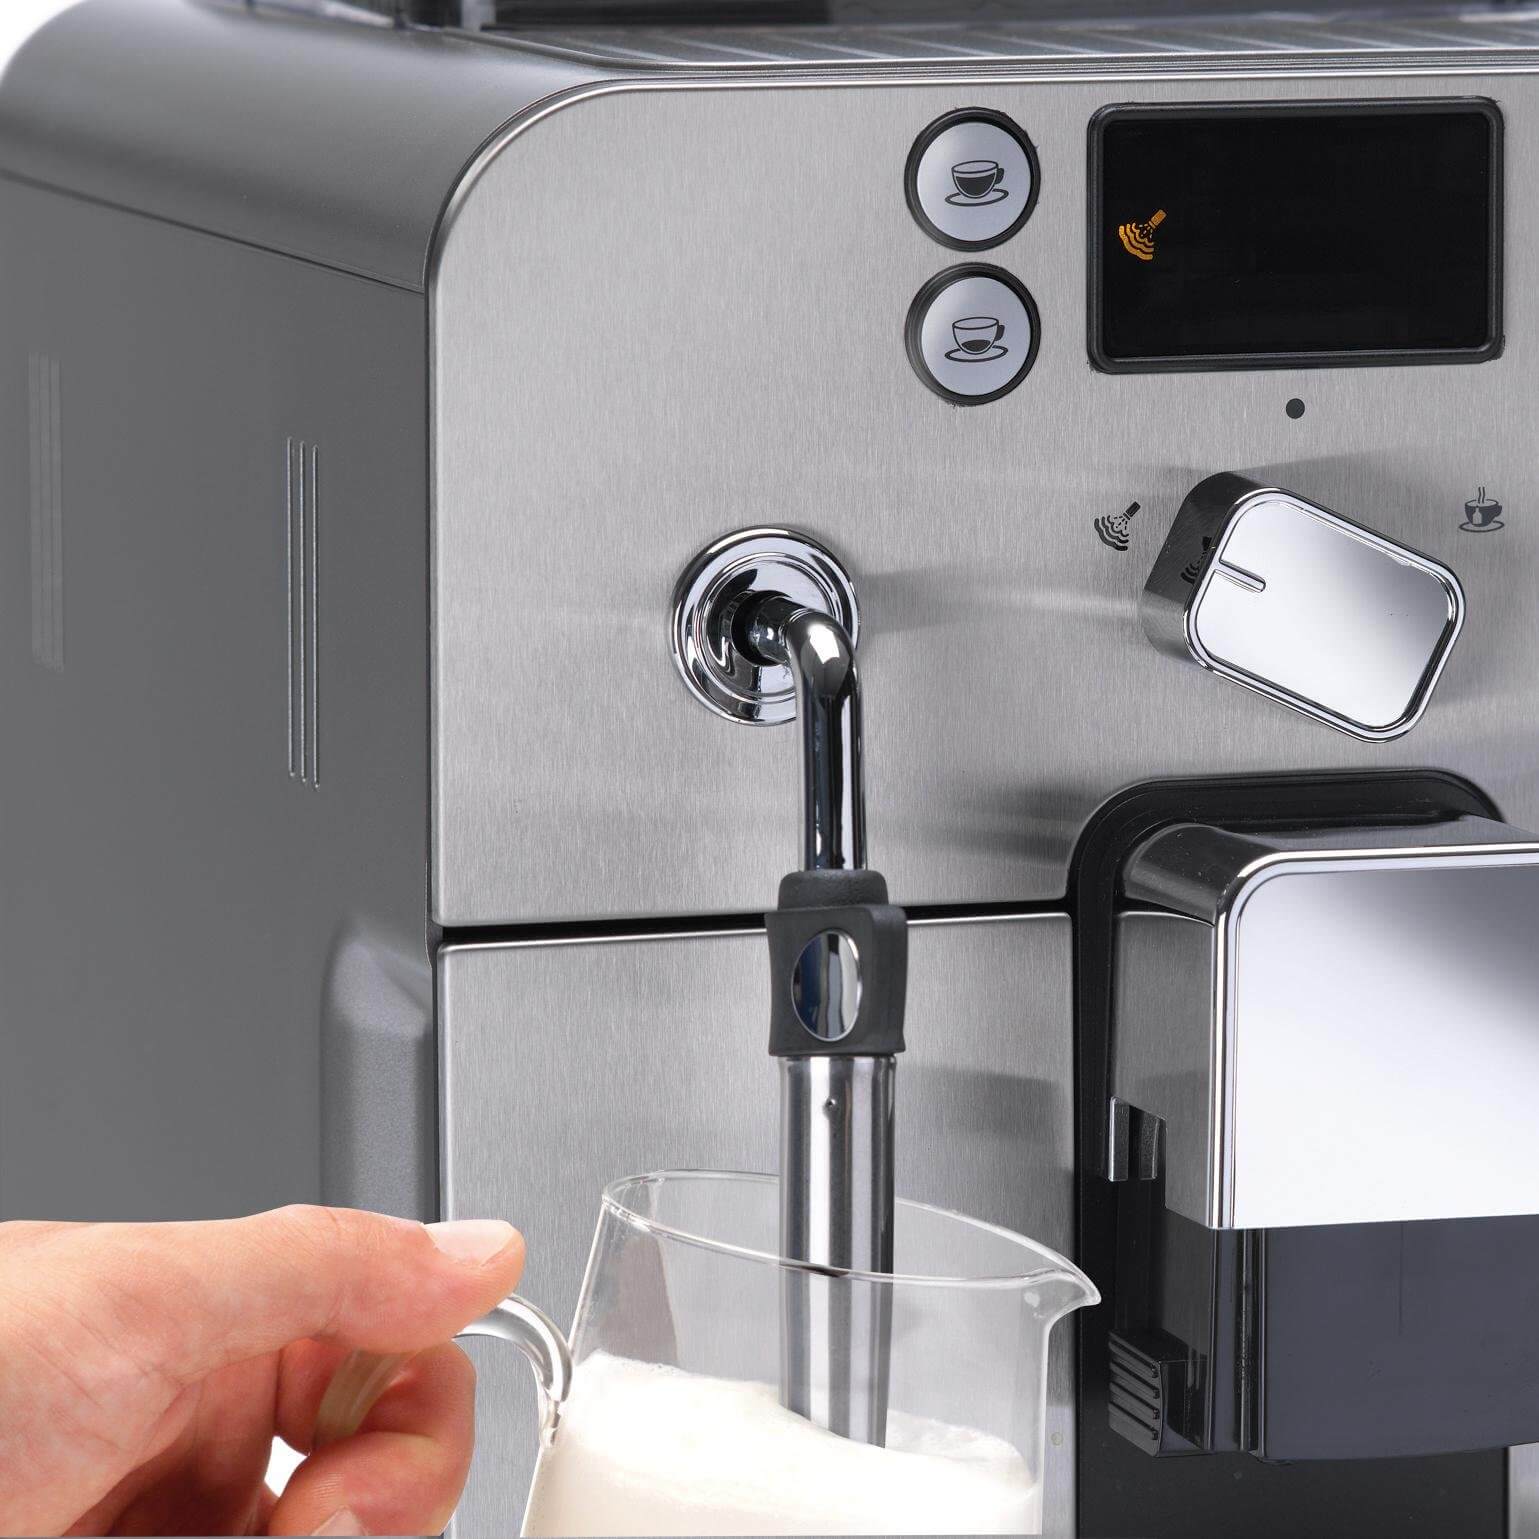 Gaggia Brera Super Automatic Espresso Machine, best automatic latte machine, best cappucino latte maker, best machine for coffee latte and cappuccino, best latte machine for beginners